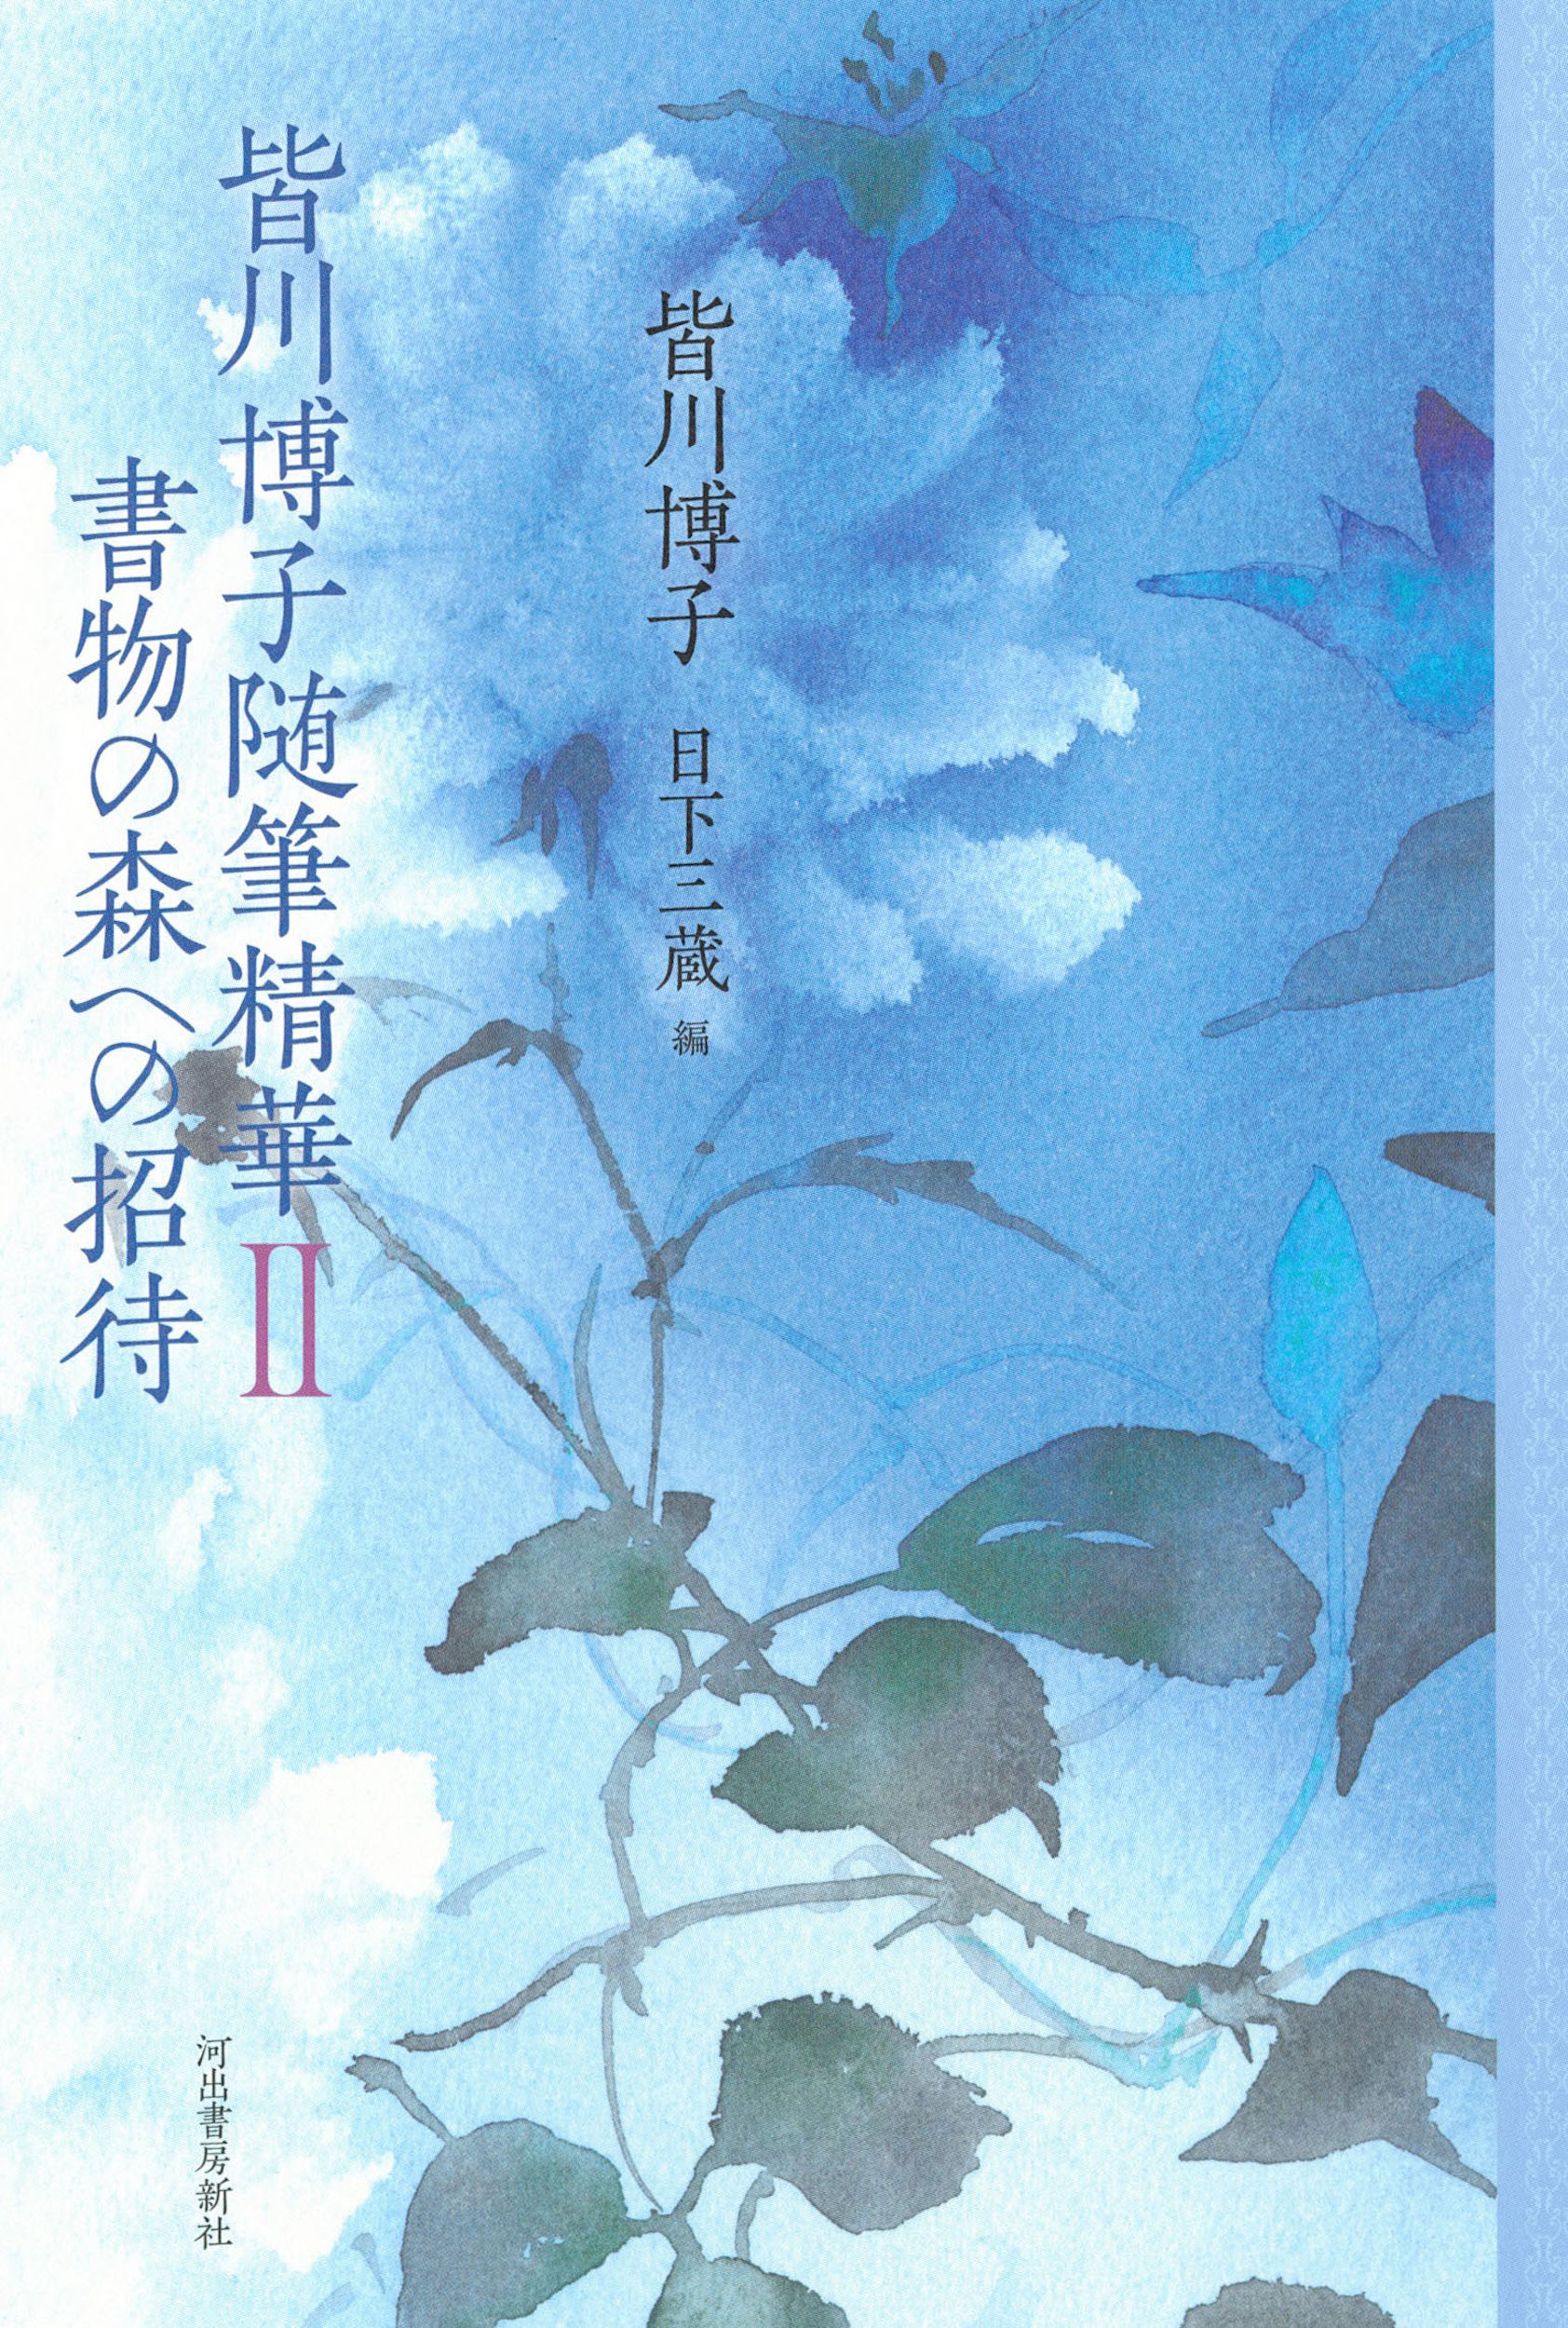 皆川博子随筆精華Ⅱ　書物の森への招待の商品画像